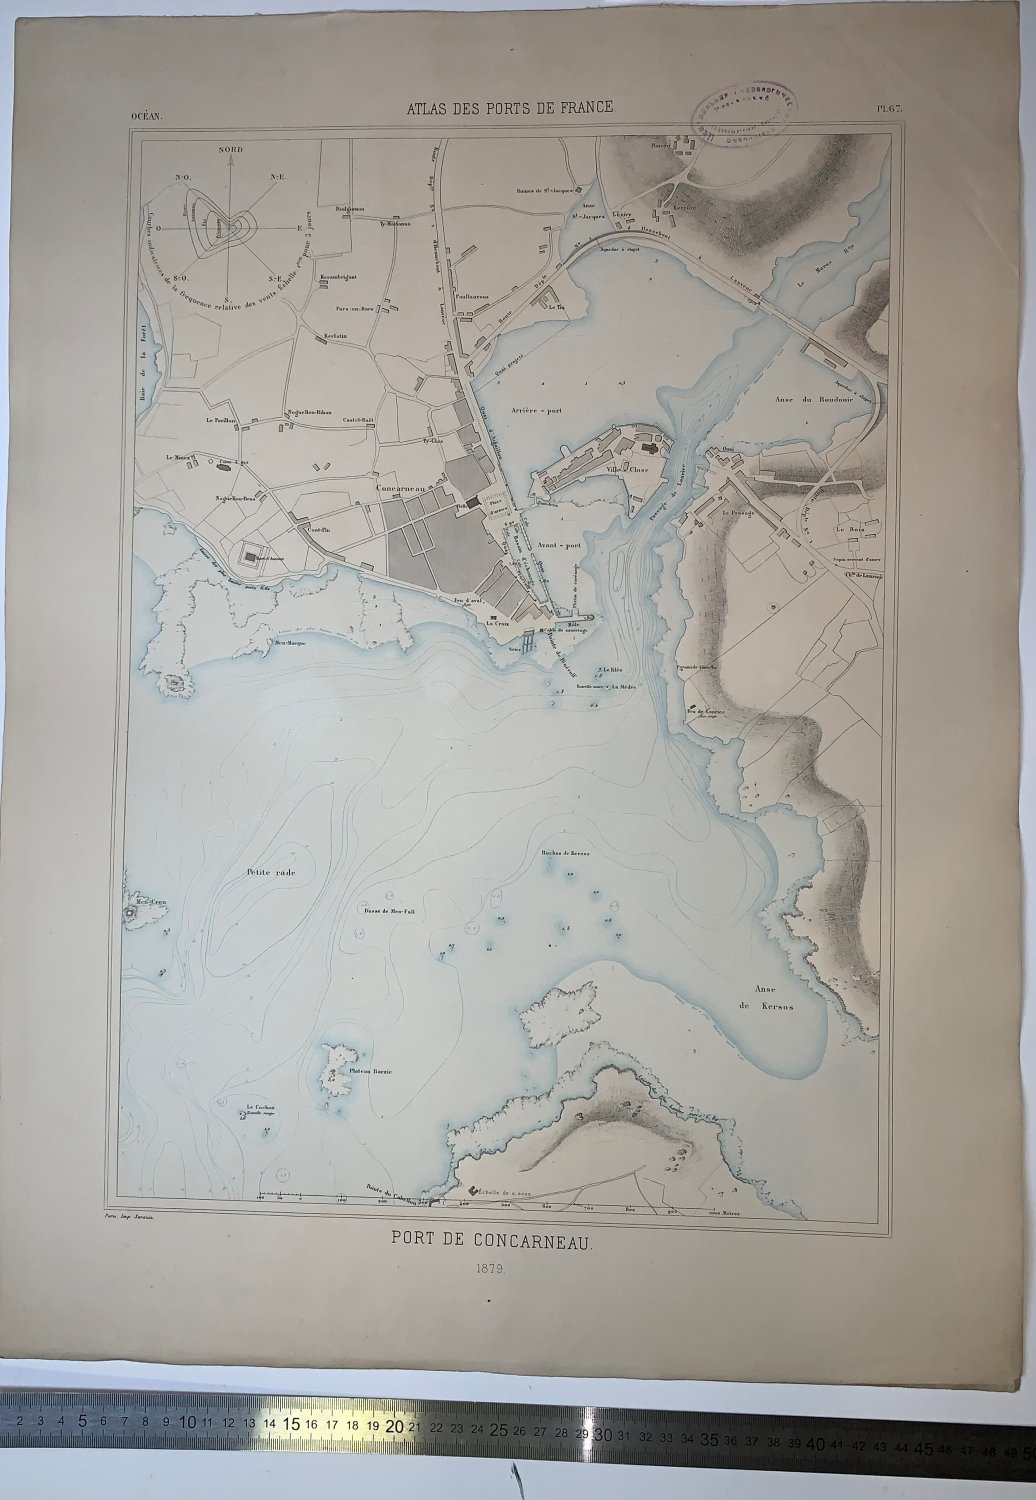 Atlas des ports de France. Port de Concarneau